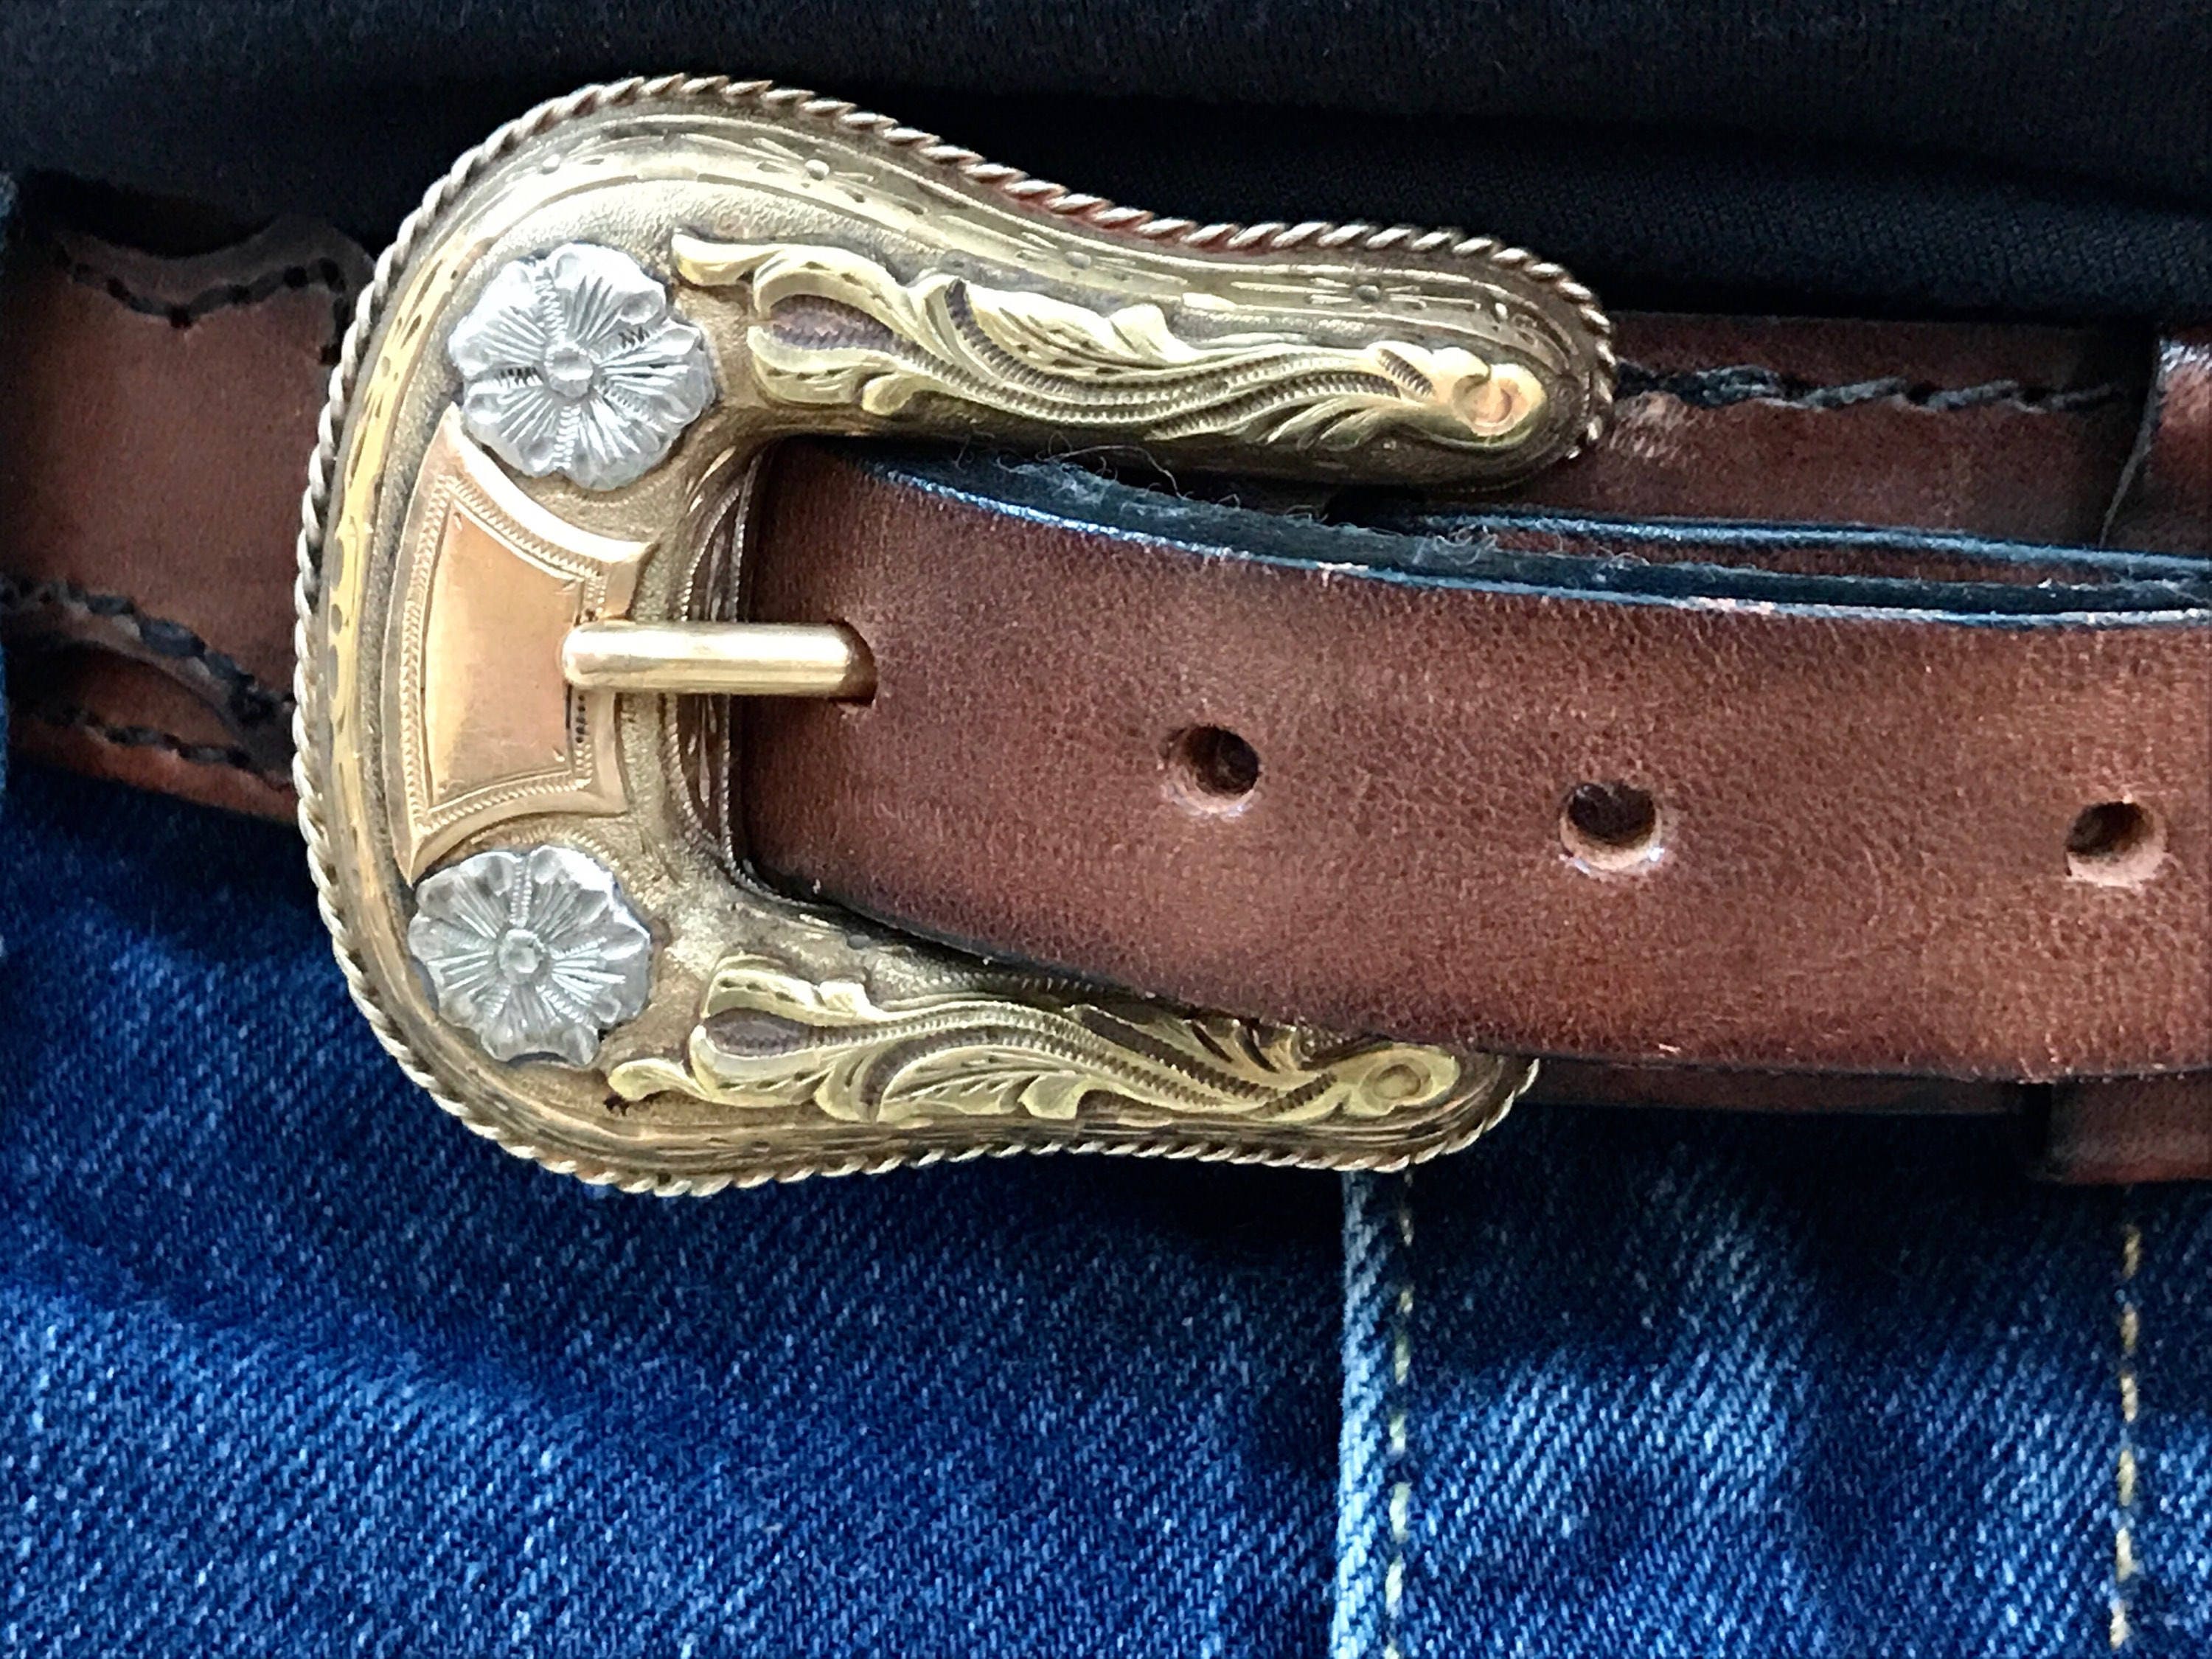 Texas Standard Modern Ranger Belt - Lowlands Tan / Brn / 34 / Men's